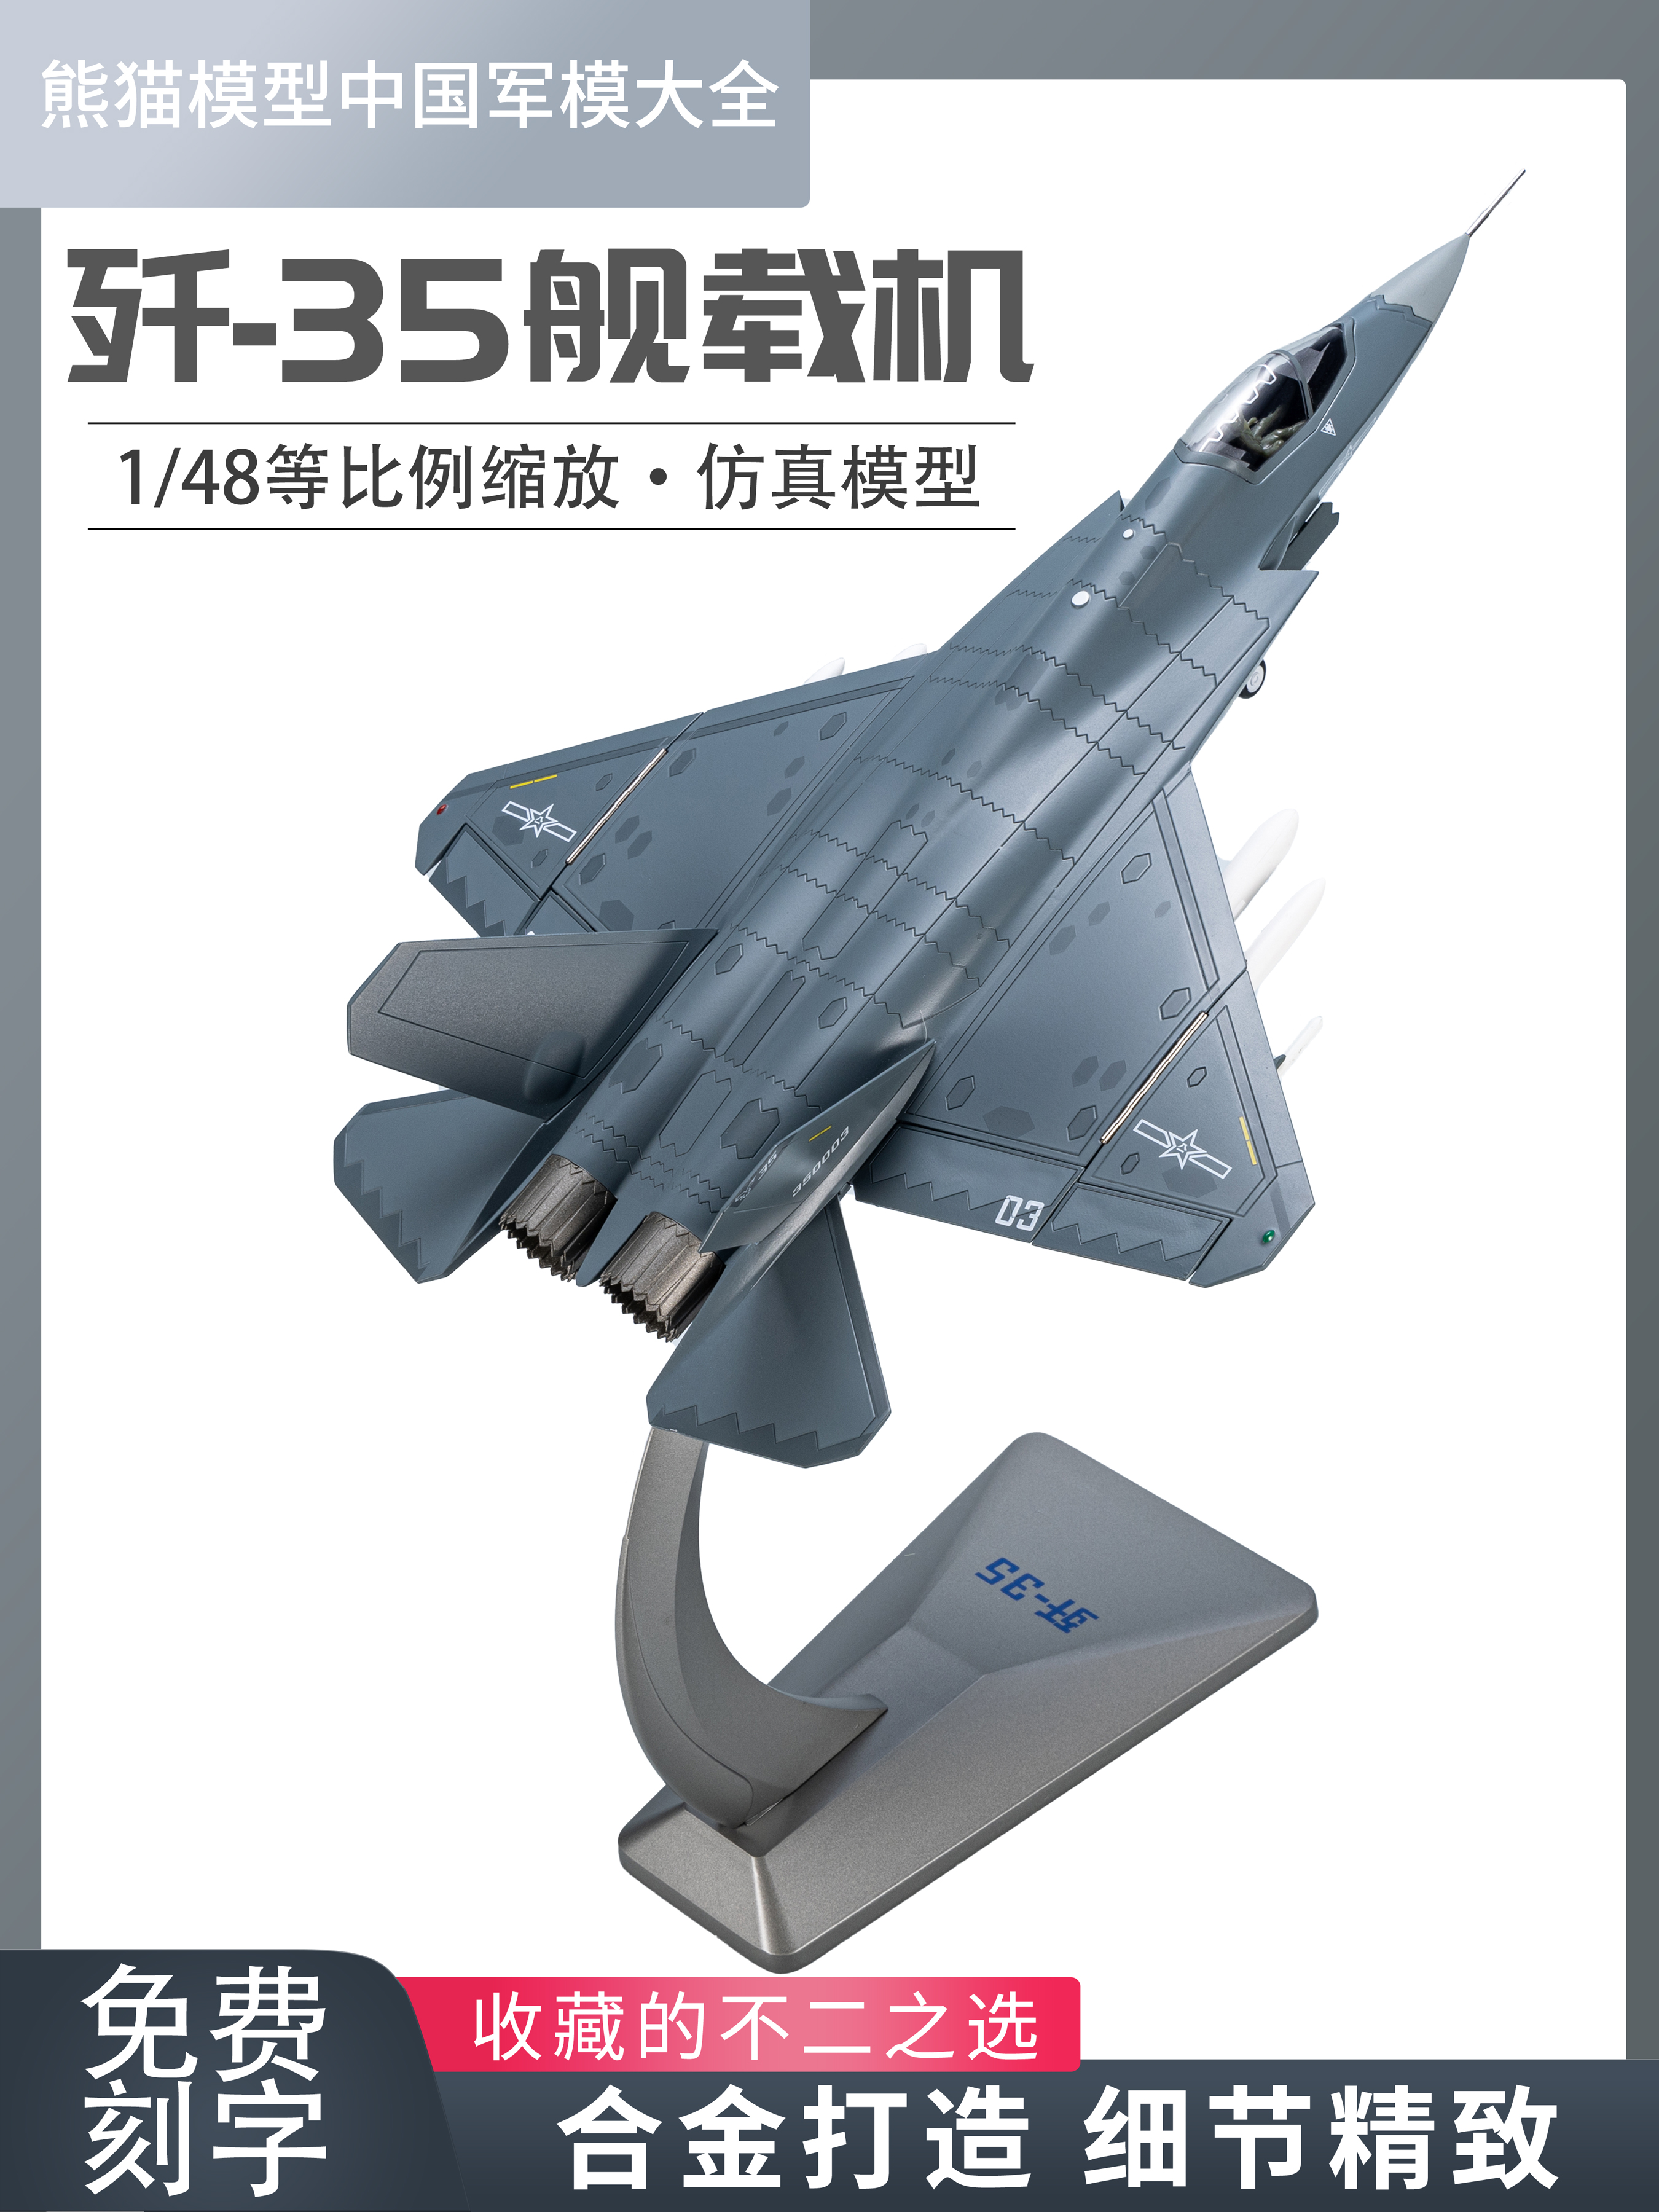 1:48 中国歼35舰载战斗机 j35合金仿真飞机模型成品收藏摆件送礼